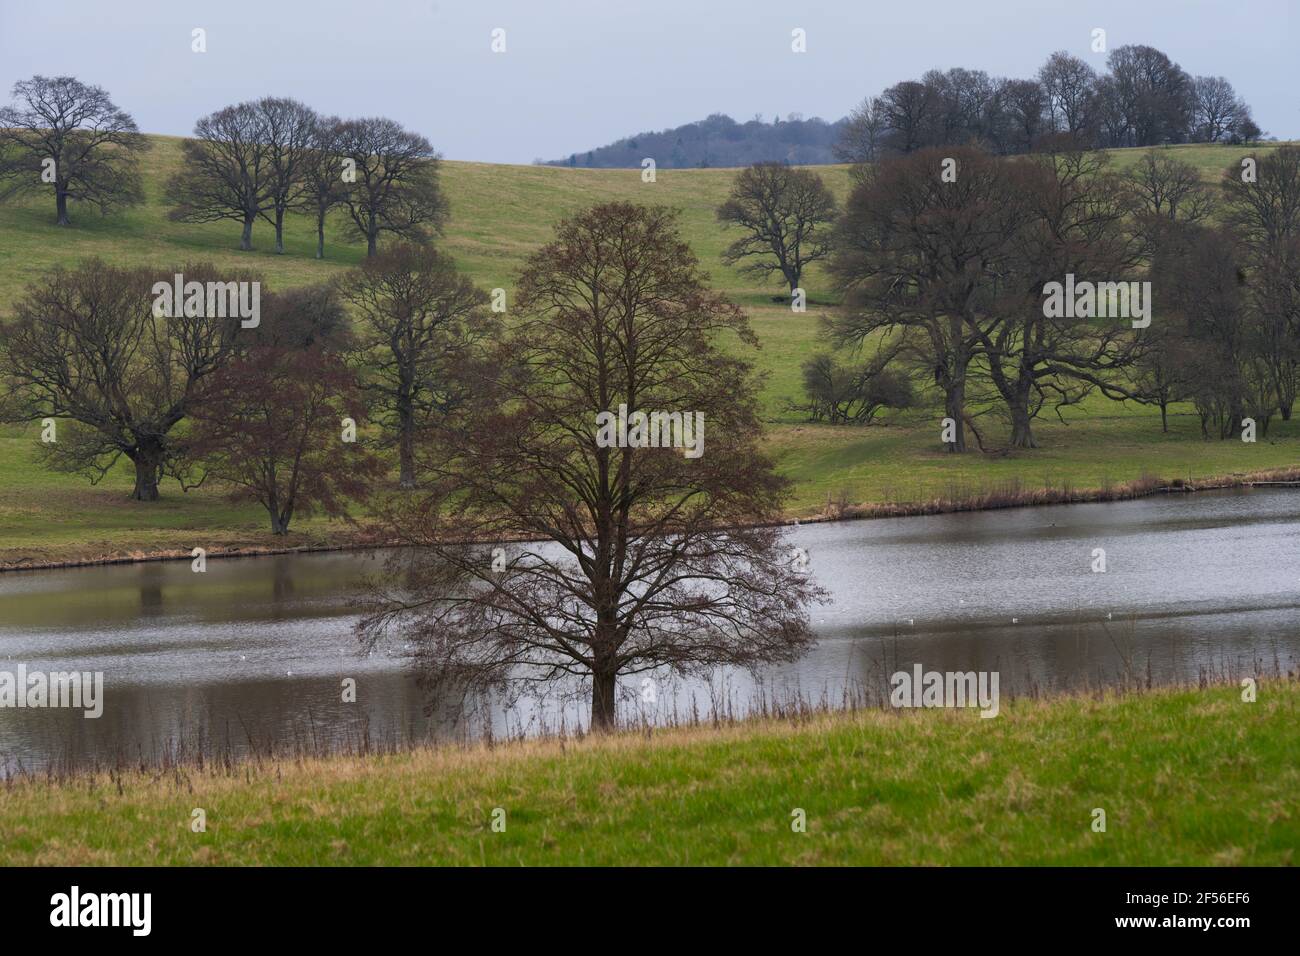 De beaux arbres s'arient sur un lac près de Wadhurst, dans le sud-est de l'Angleterre, au début du printemps Banque D'Images